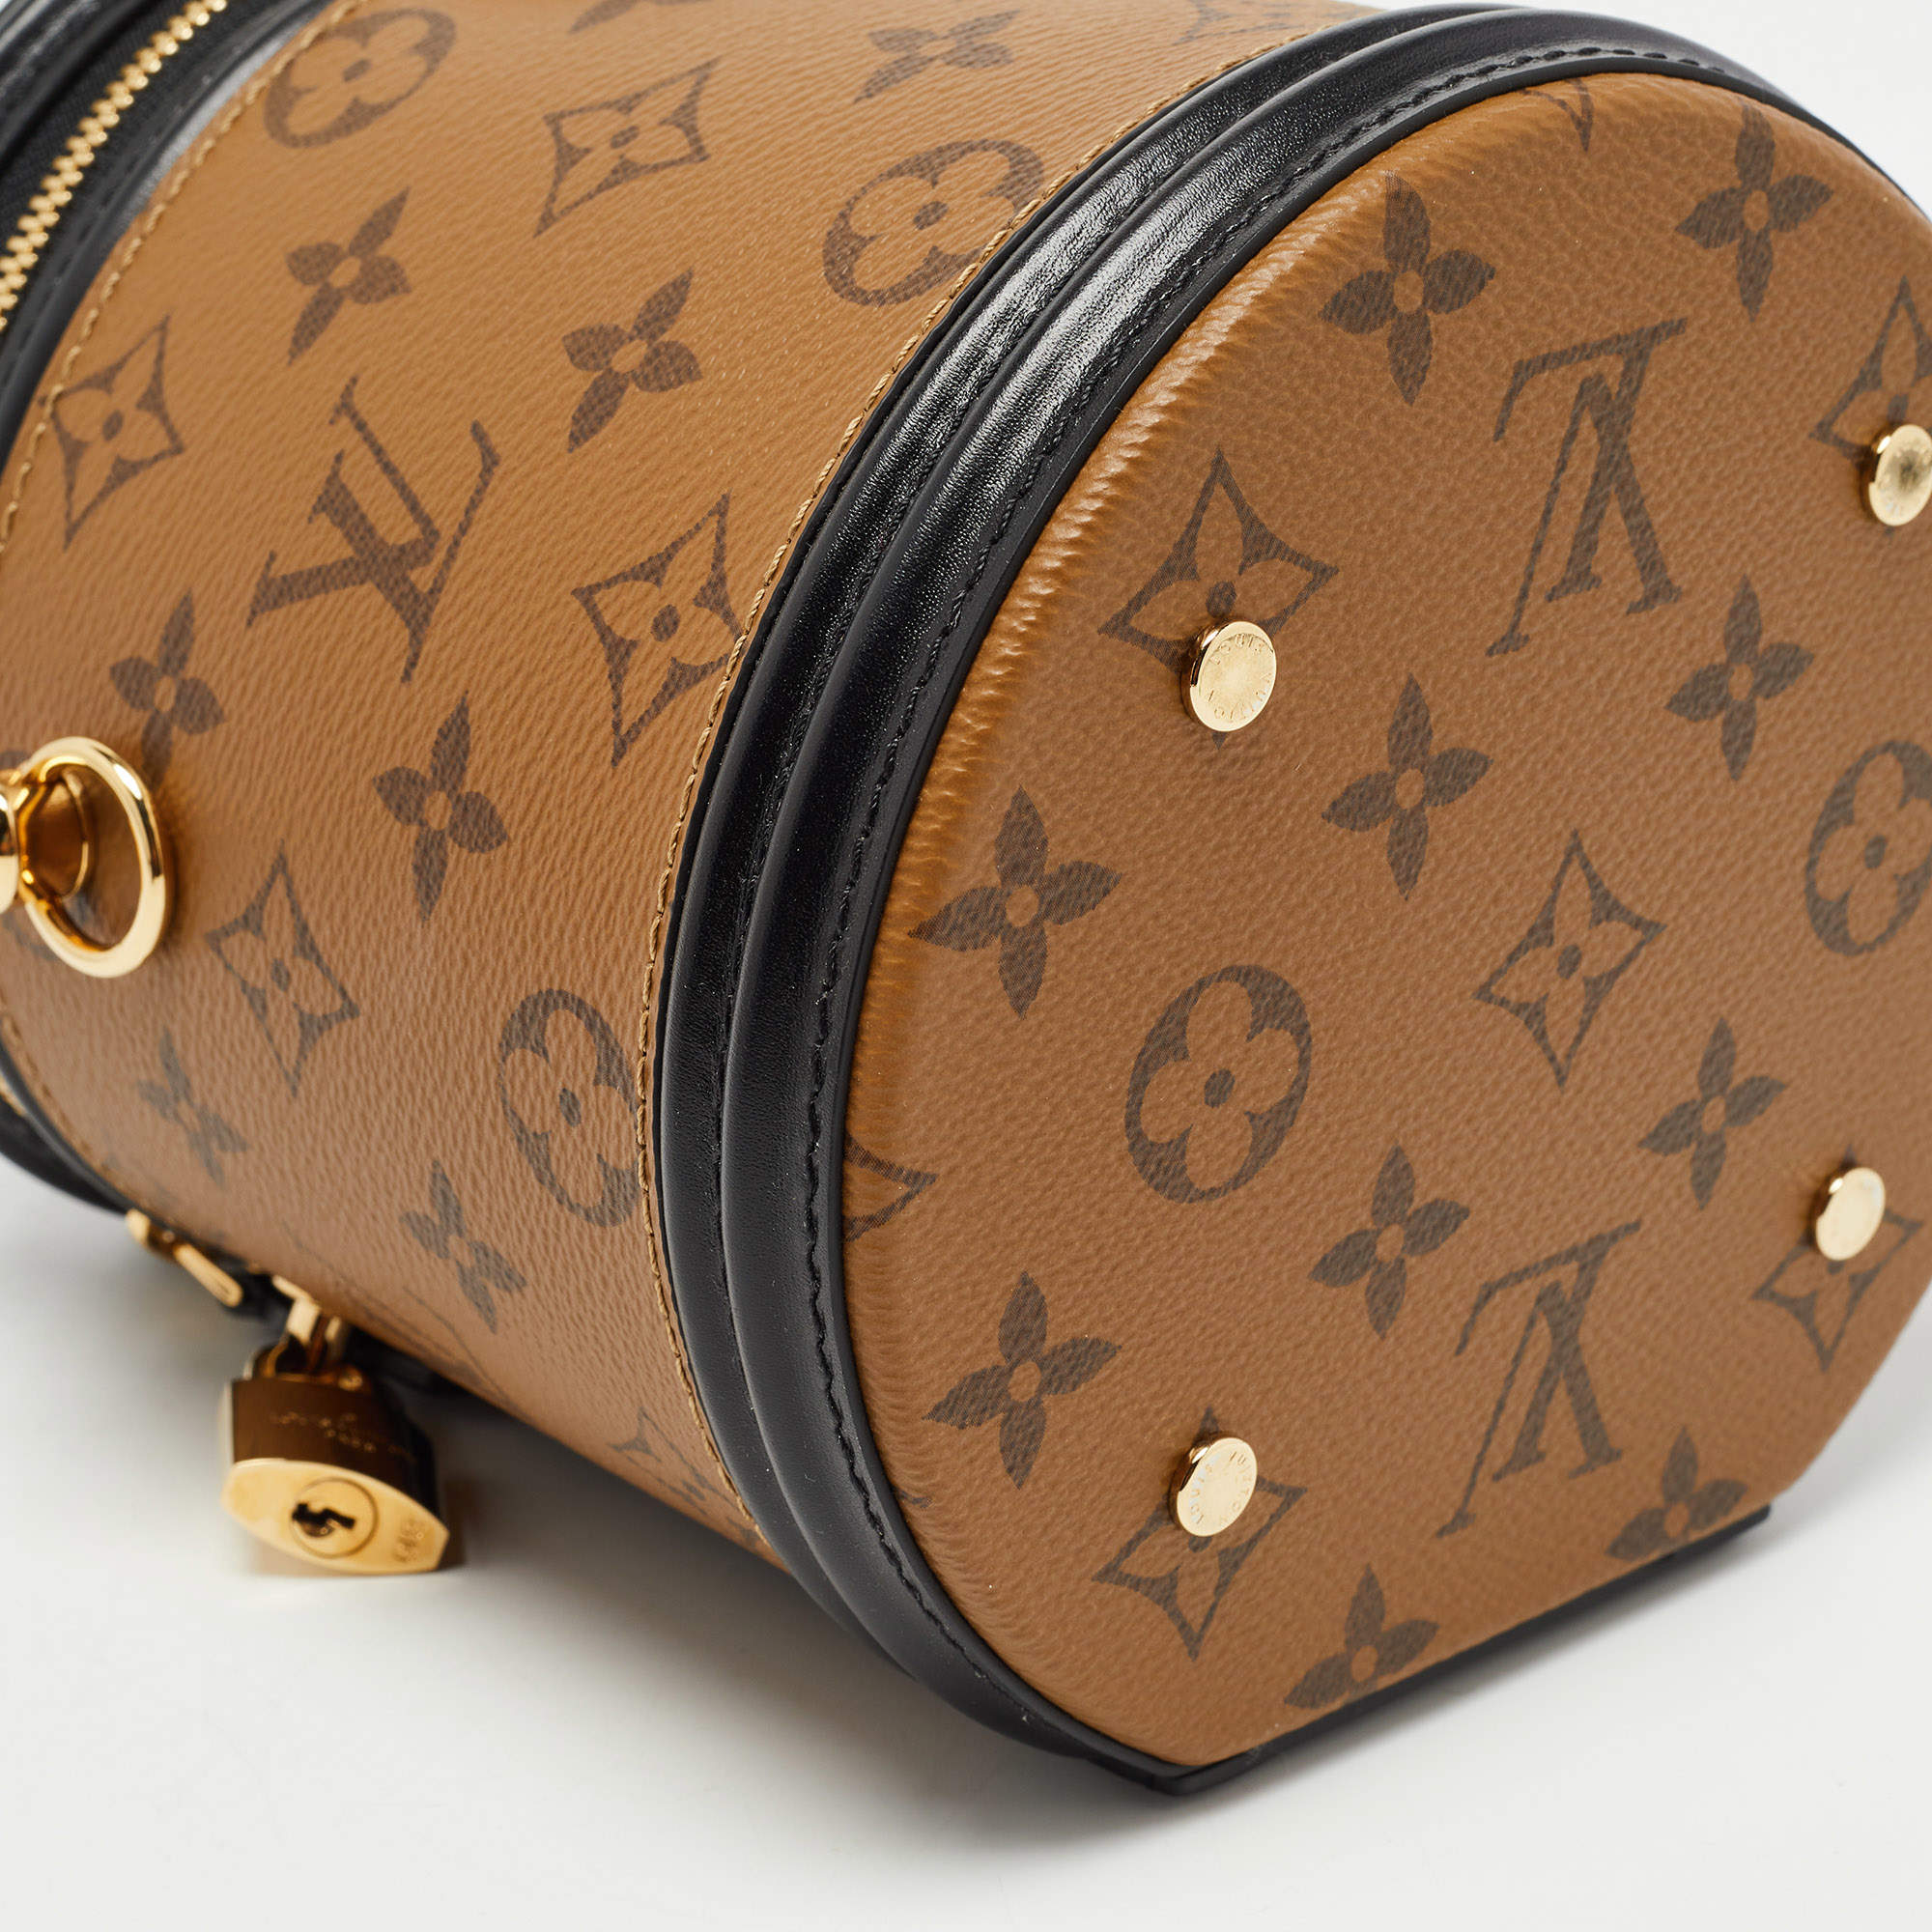 Cannes cloth handbag Louis Vuitton Brown in Cloth - 26164289